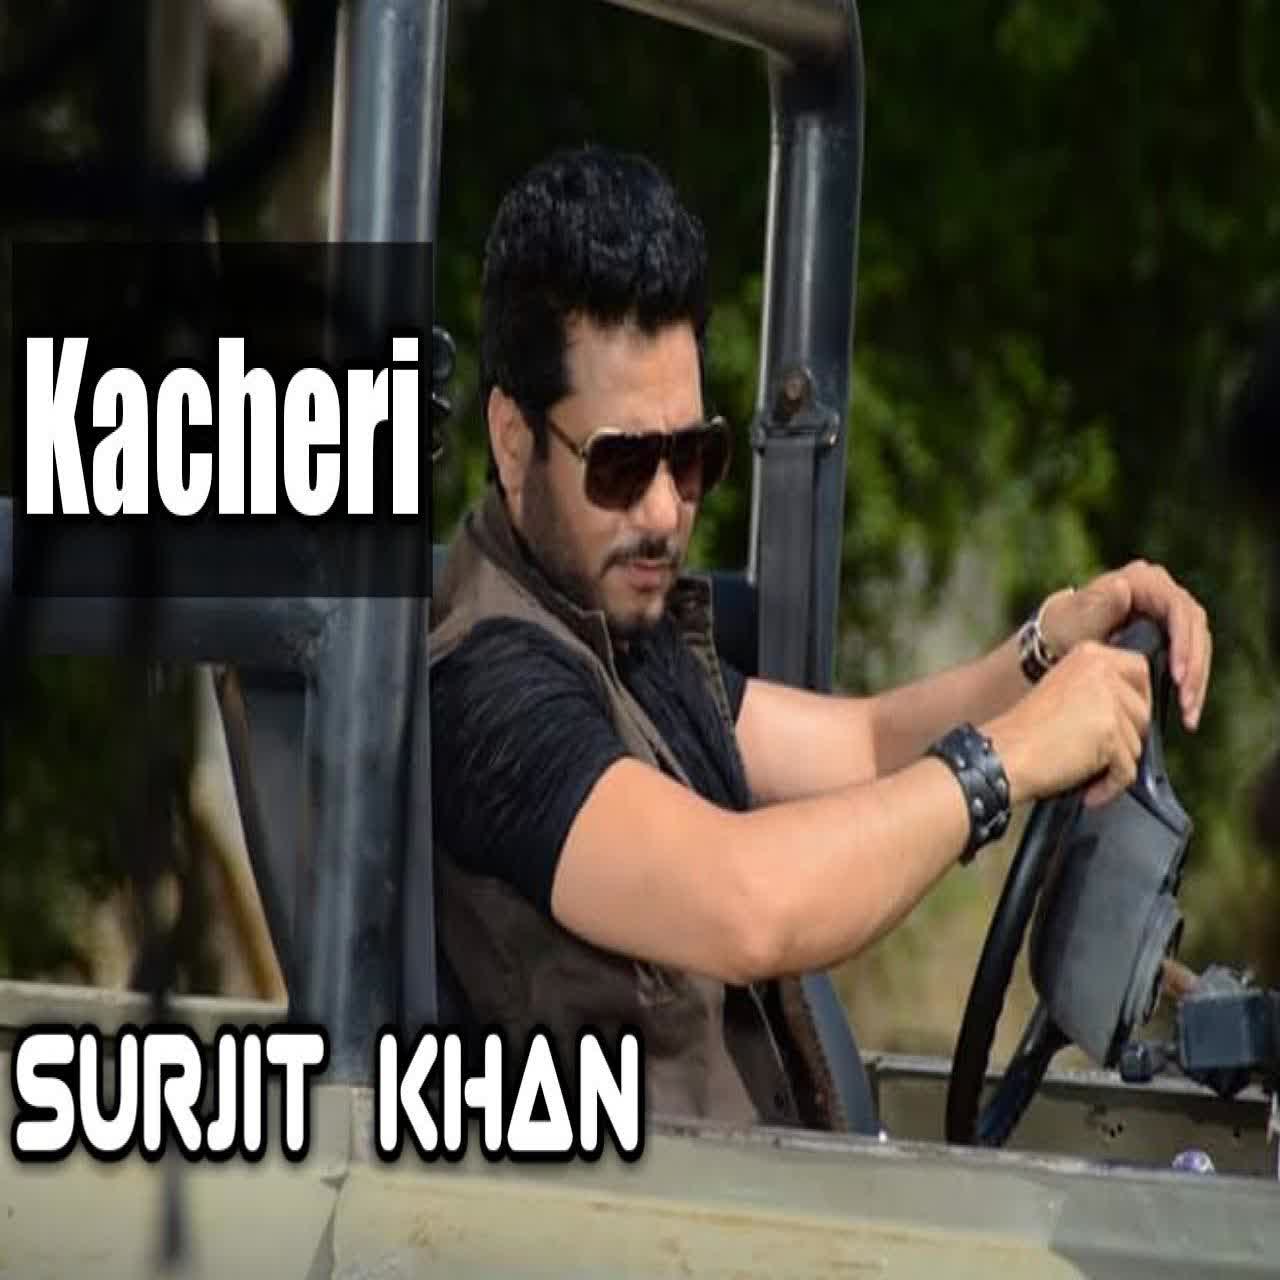 Kacheri Surjit Khan mp3 song